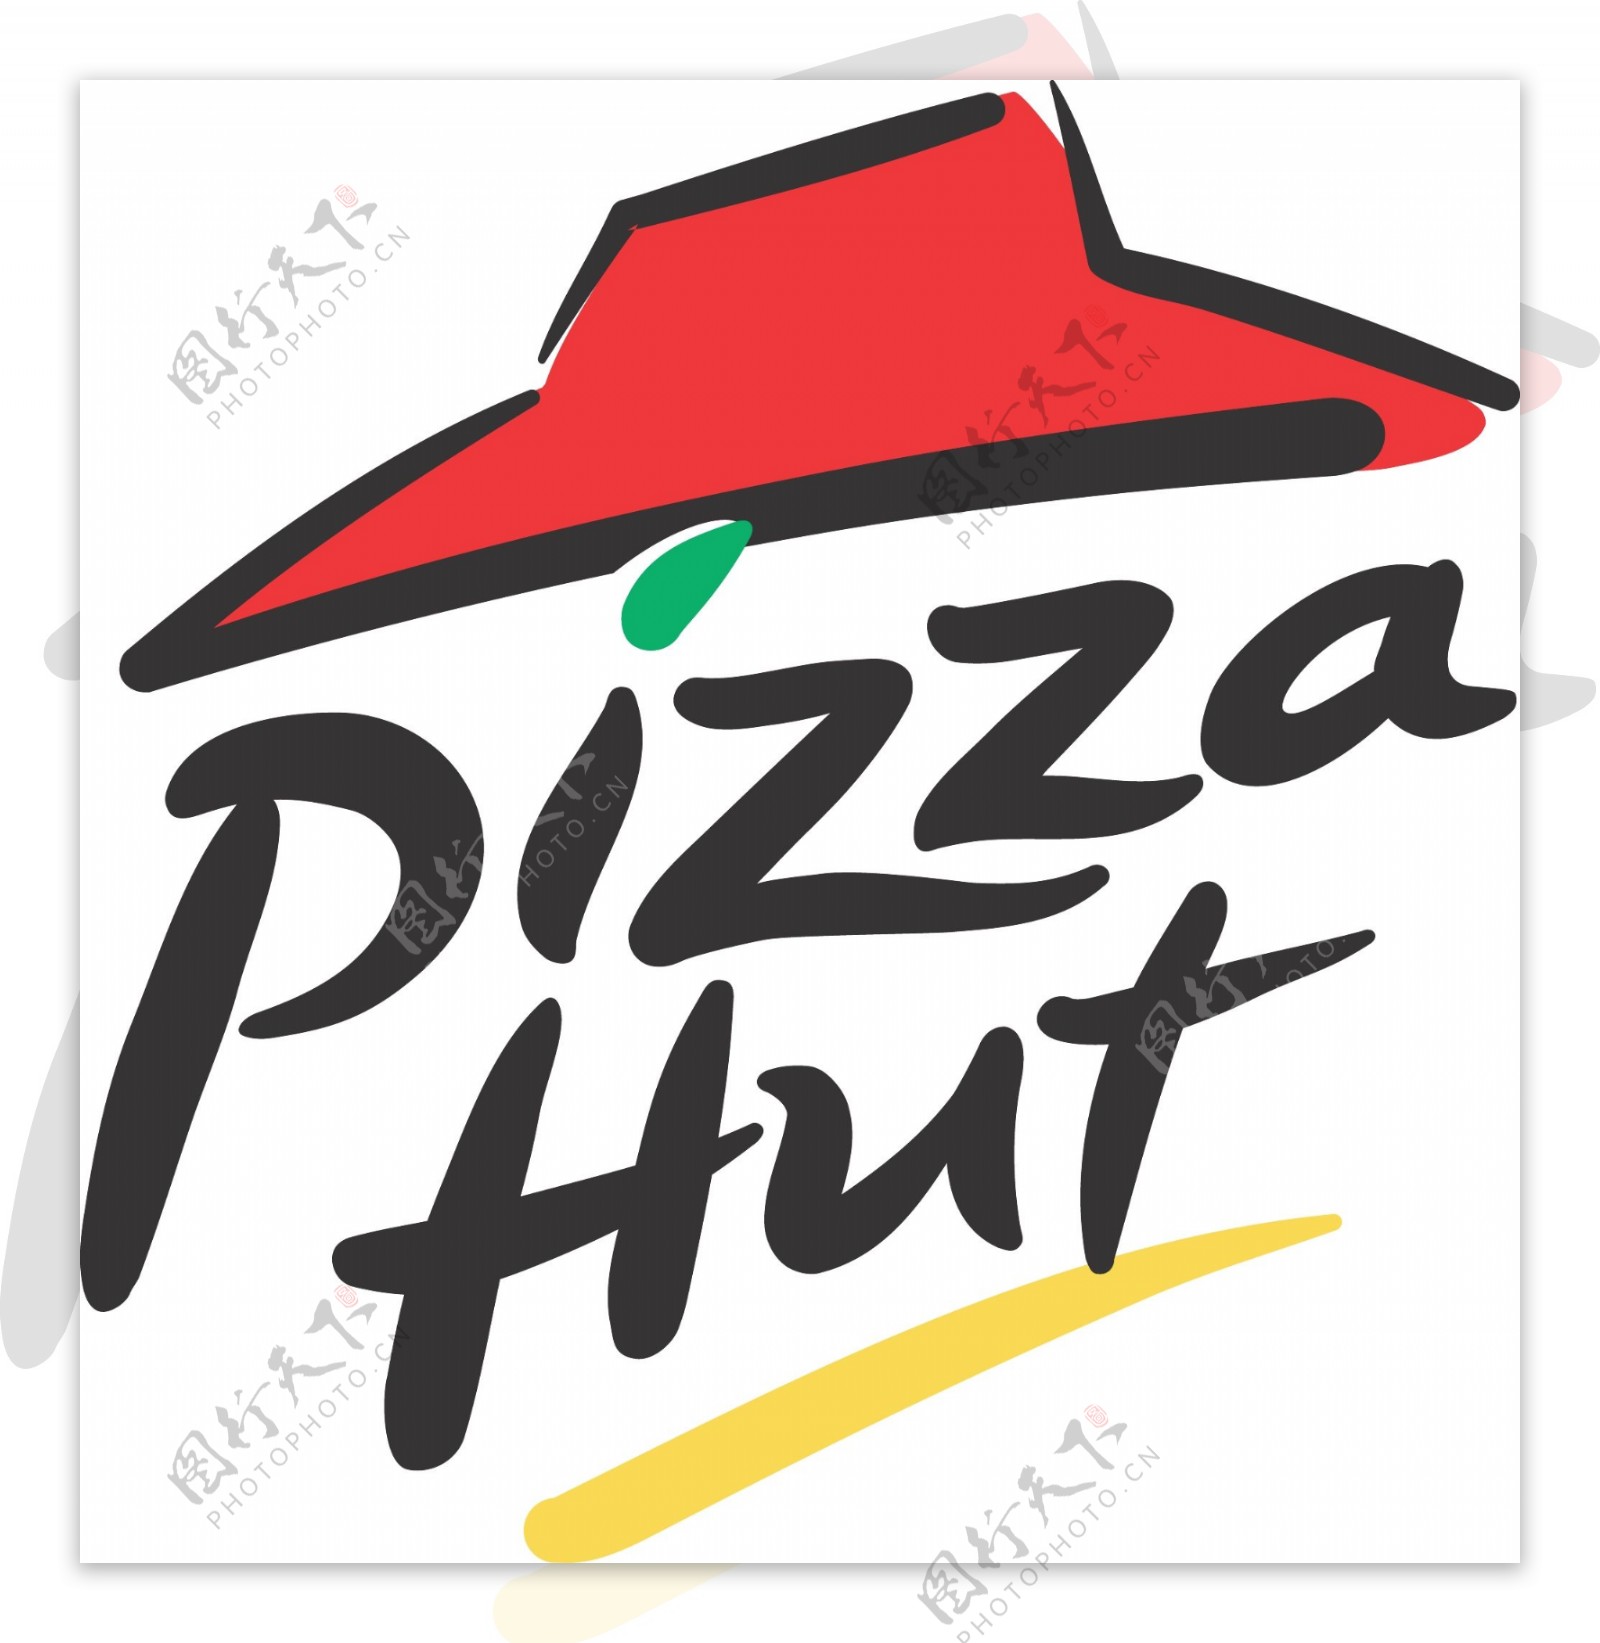 pizzahut必胜客标志